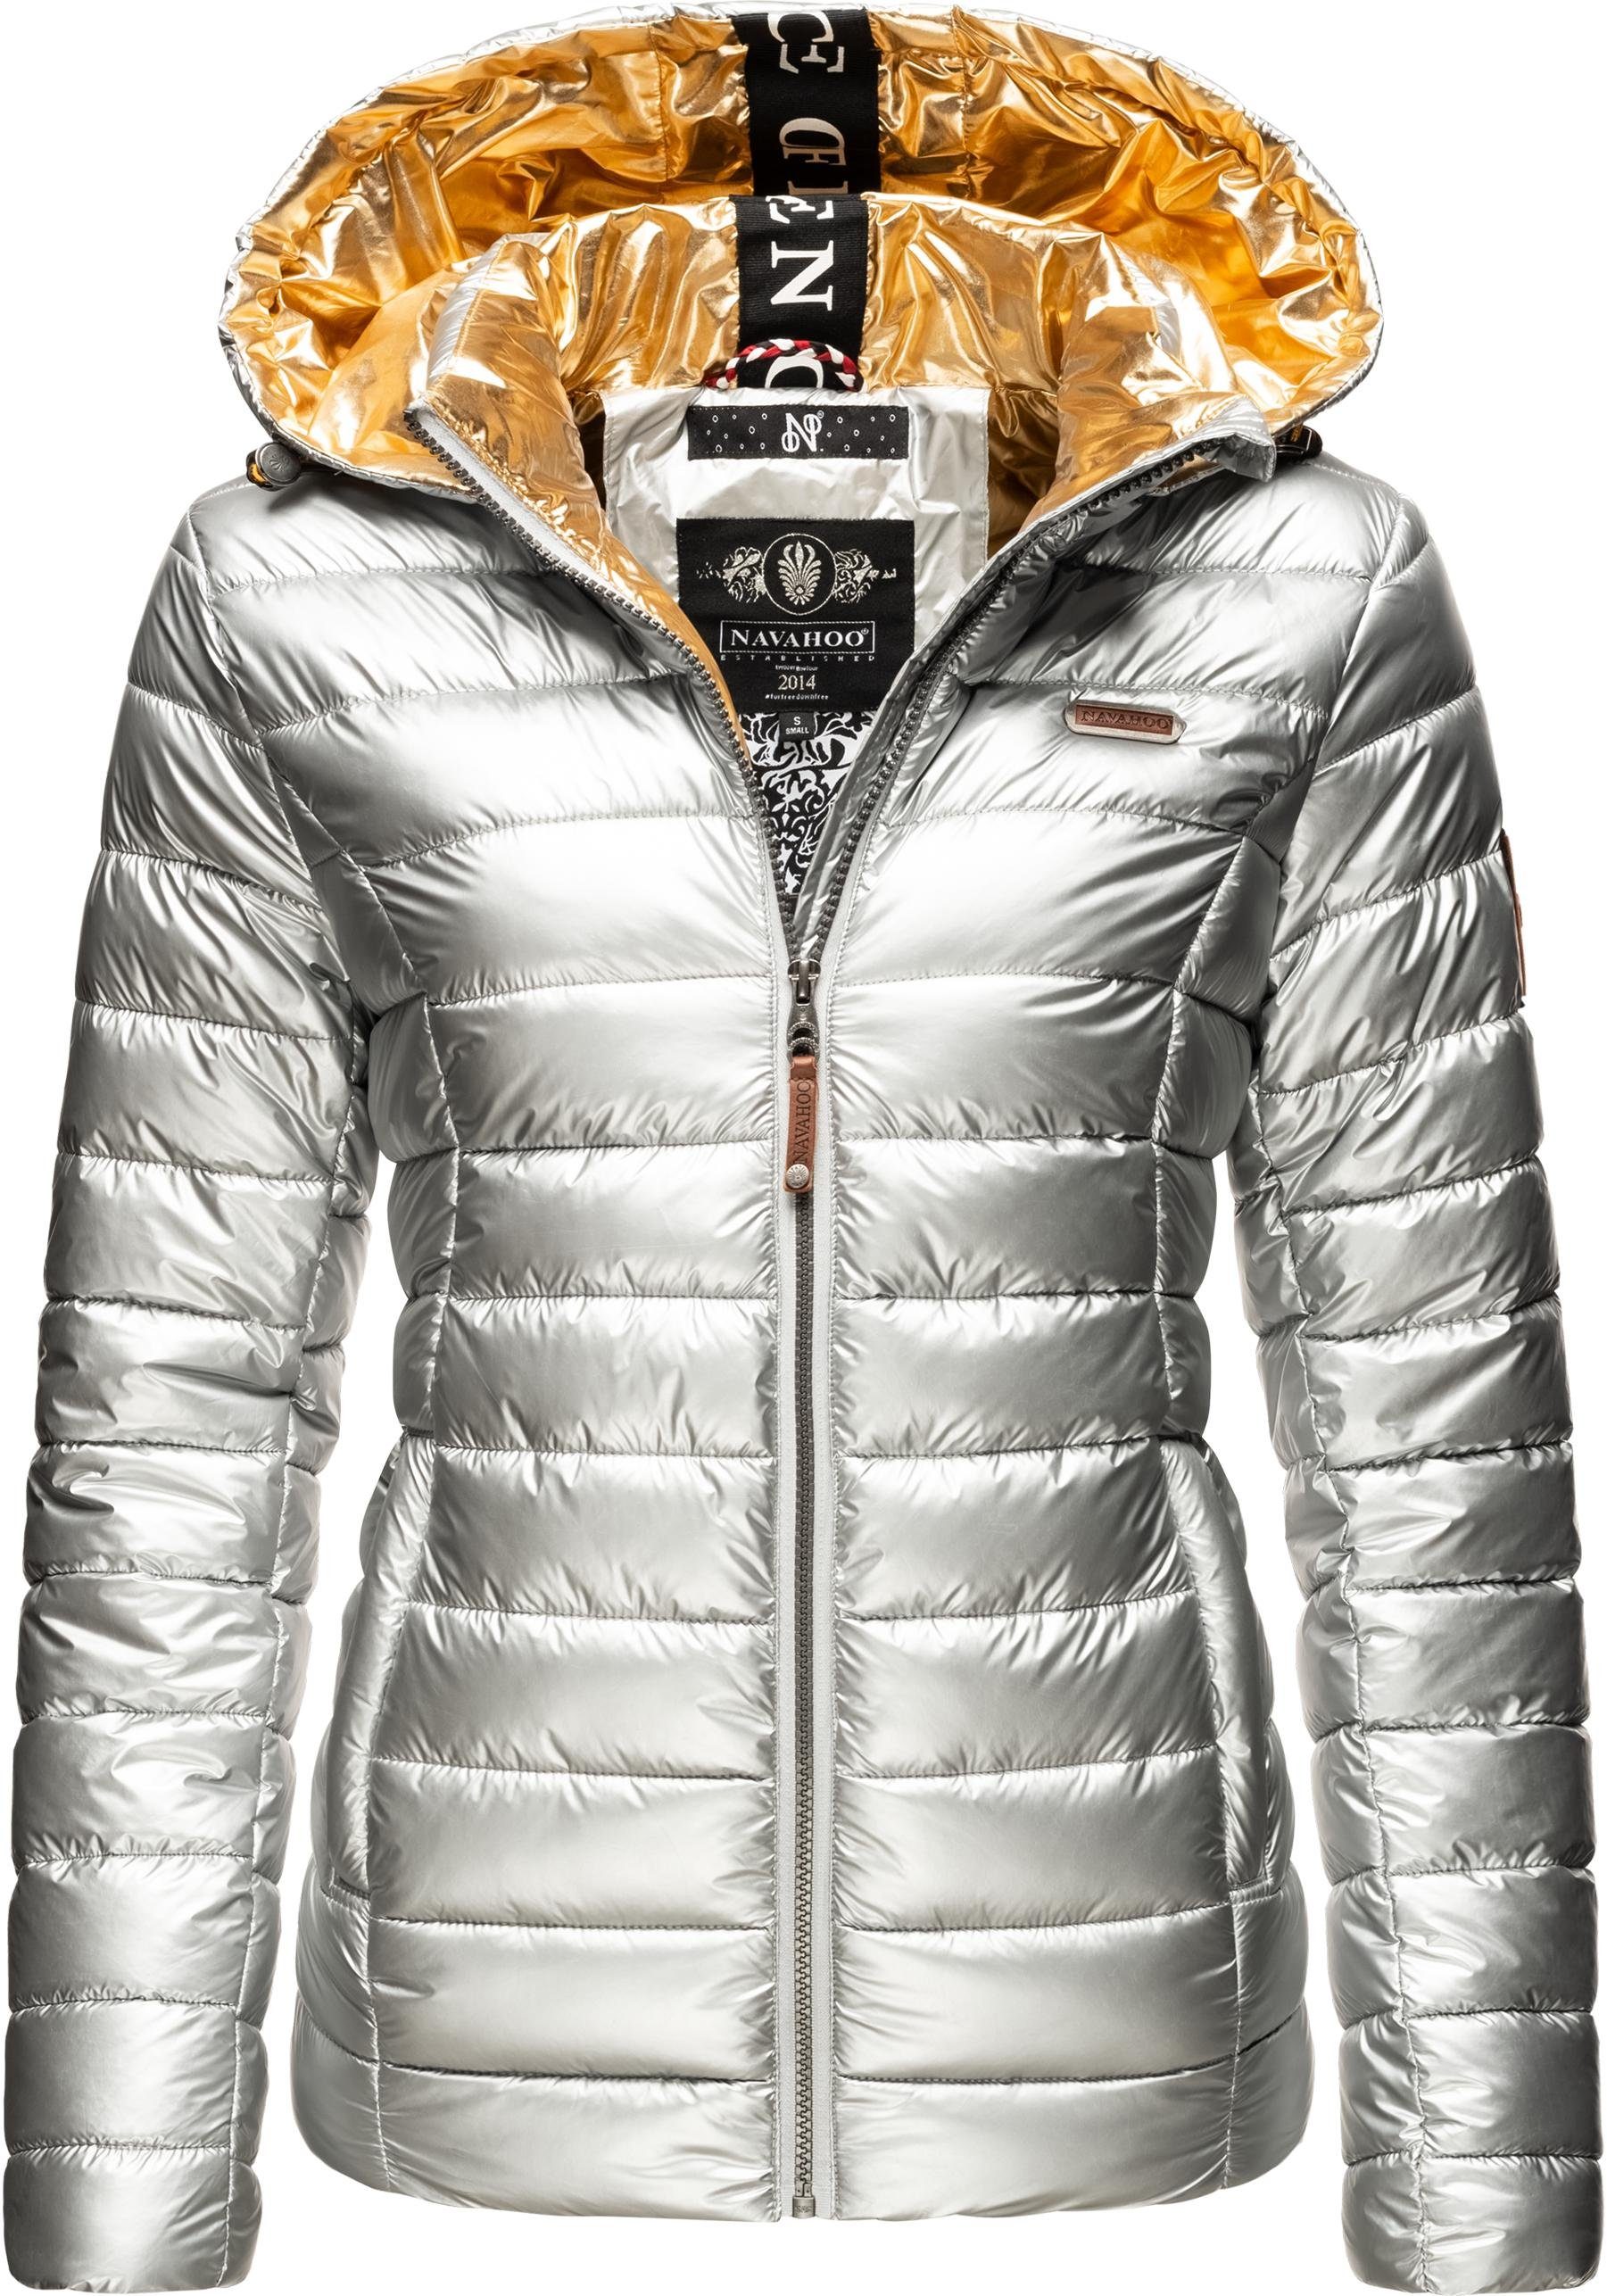 Silberne Jacke online kaufen | OTTO